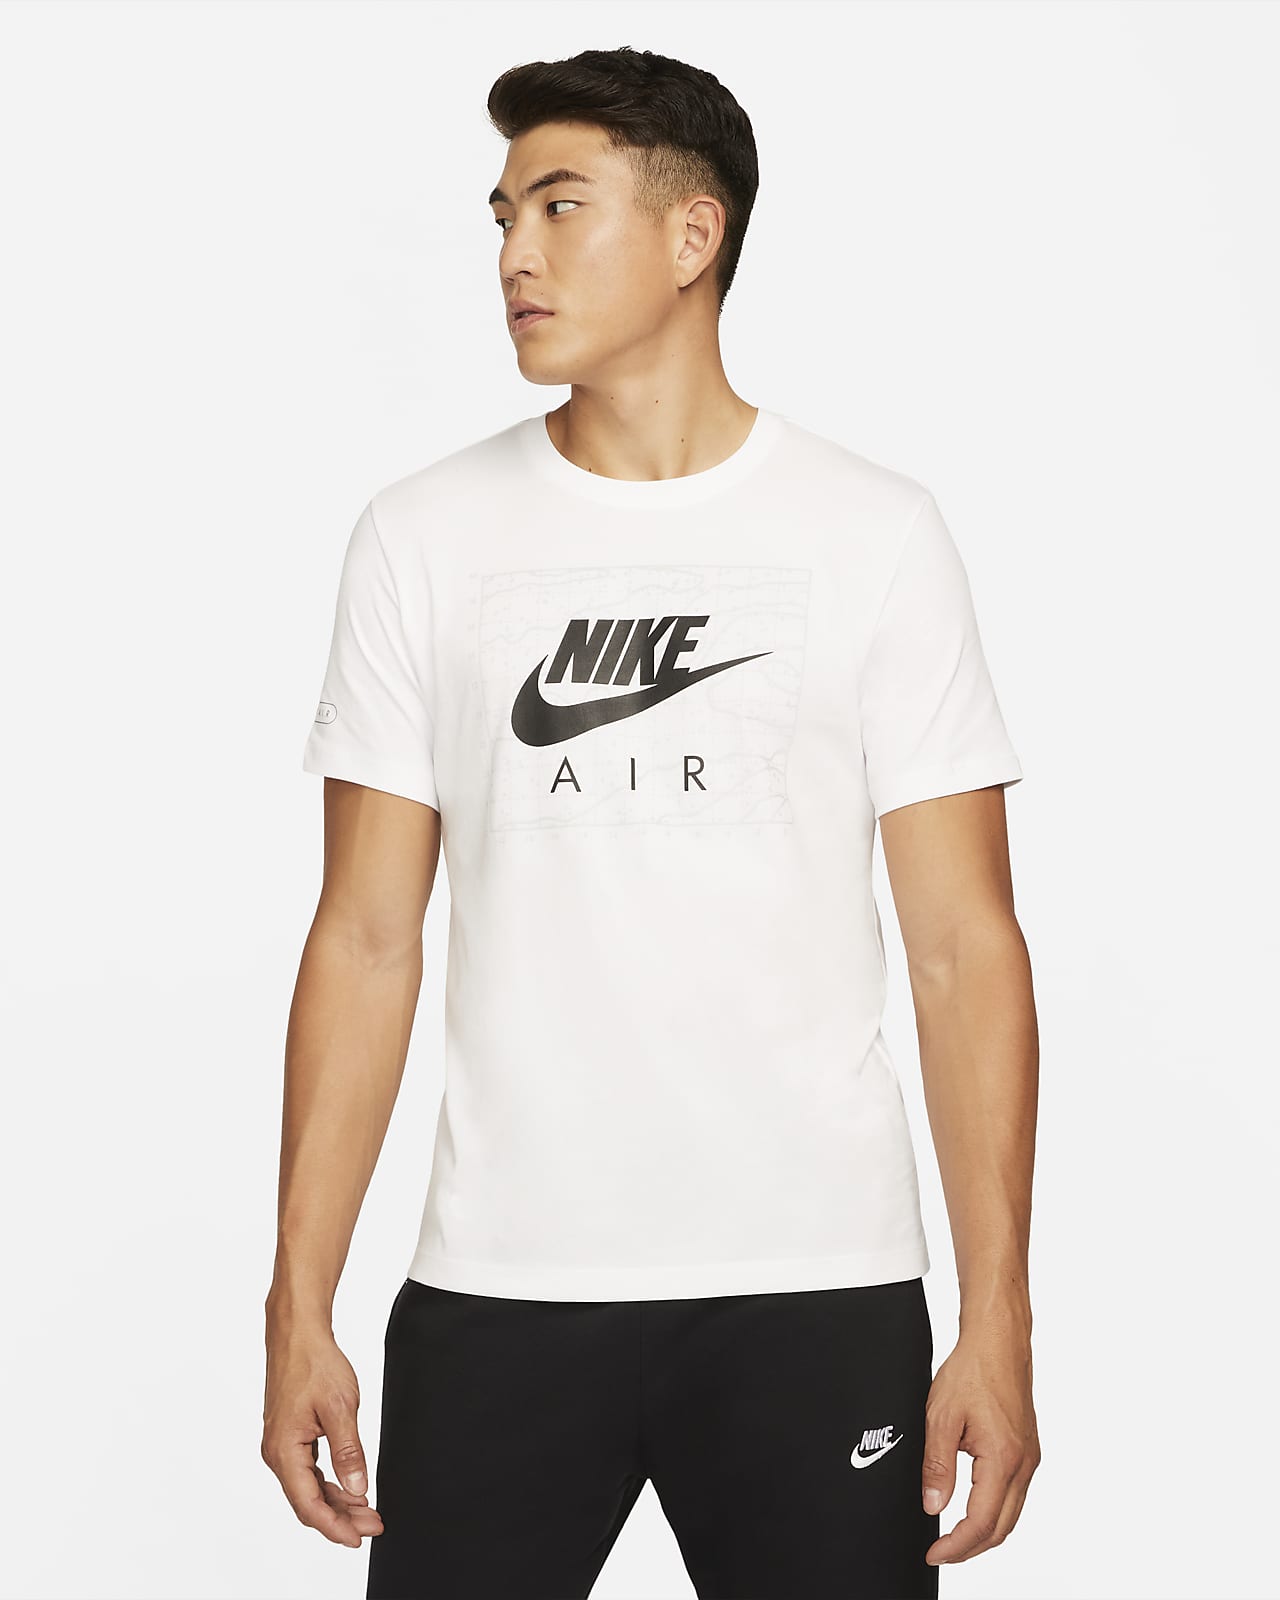 Air Men's T-Shirt. Nike